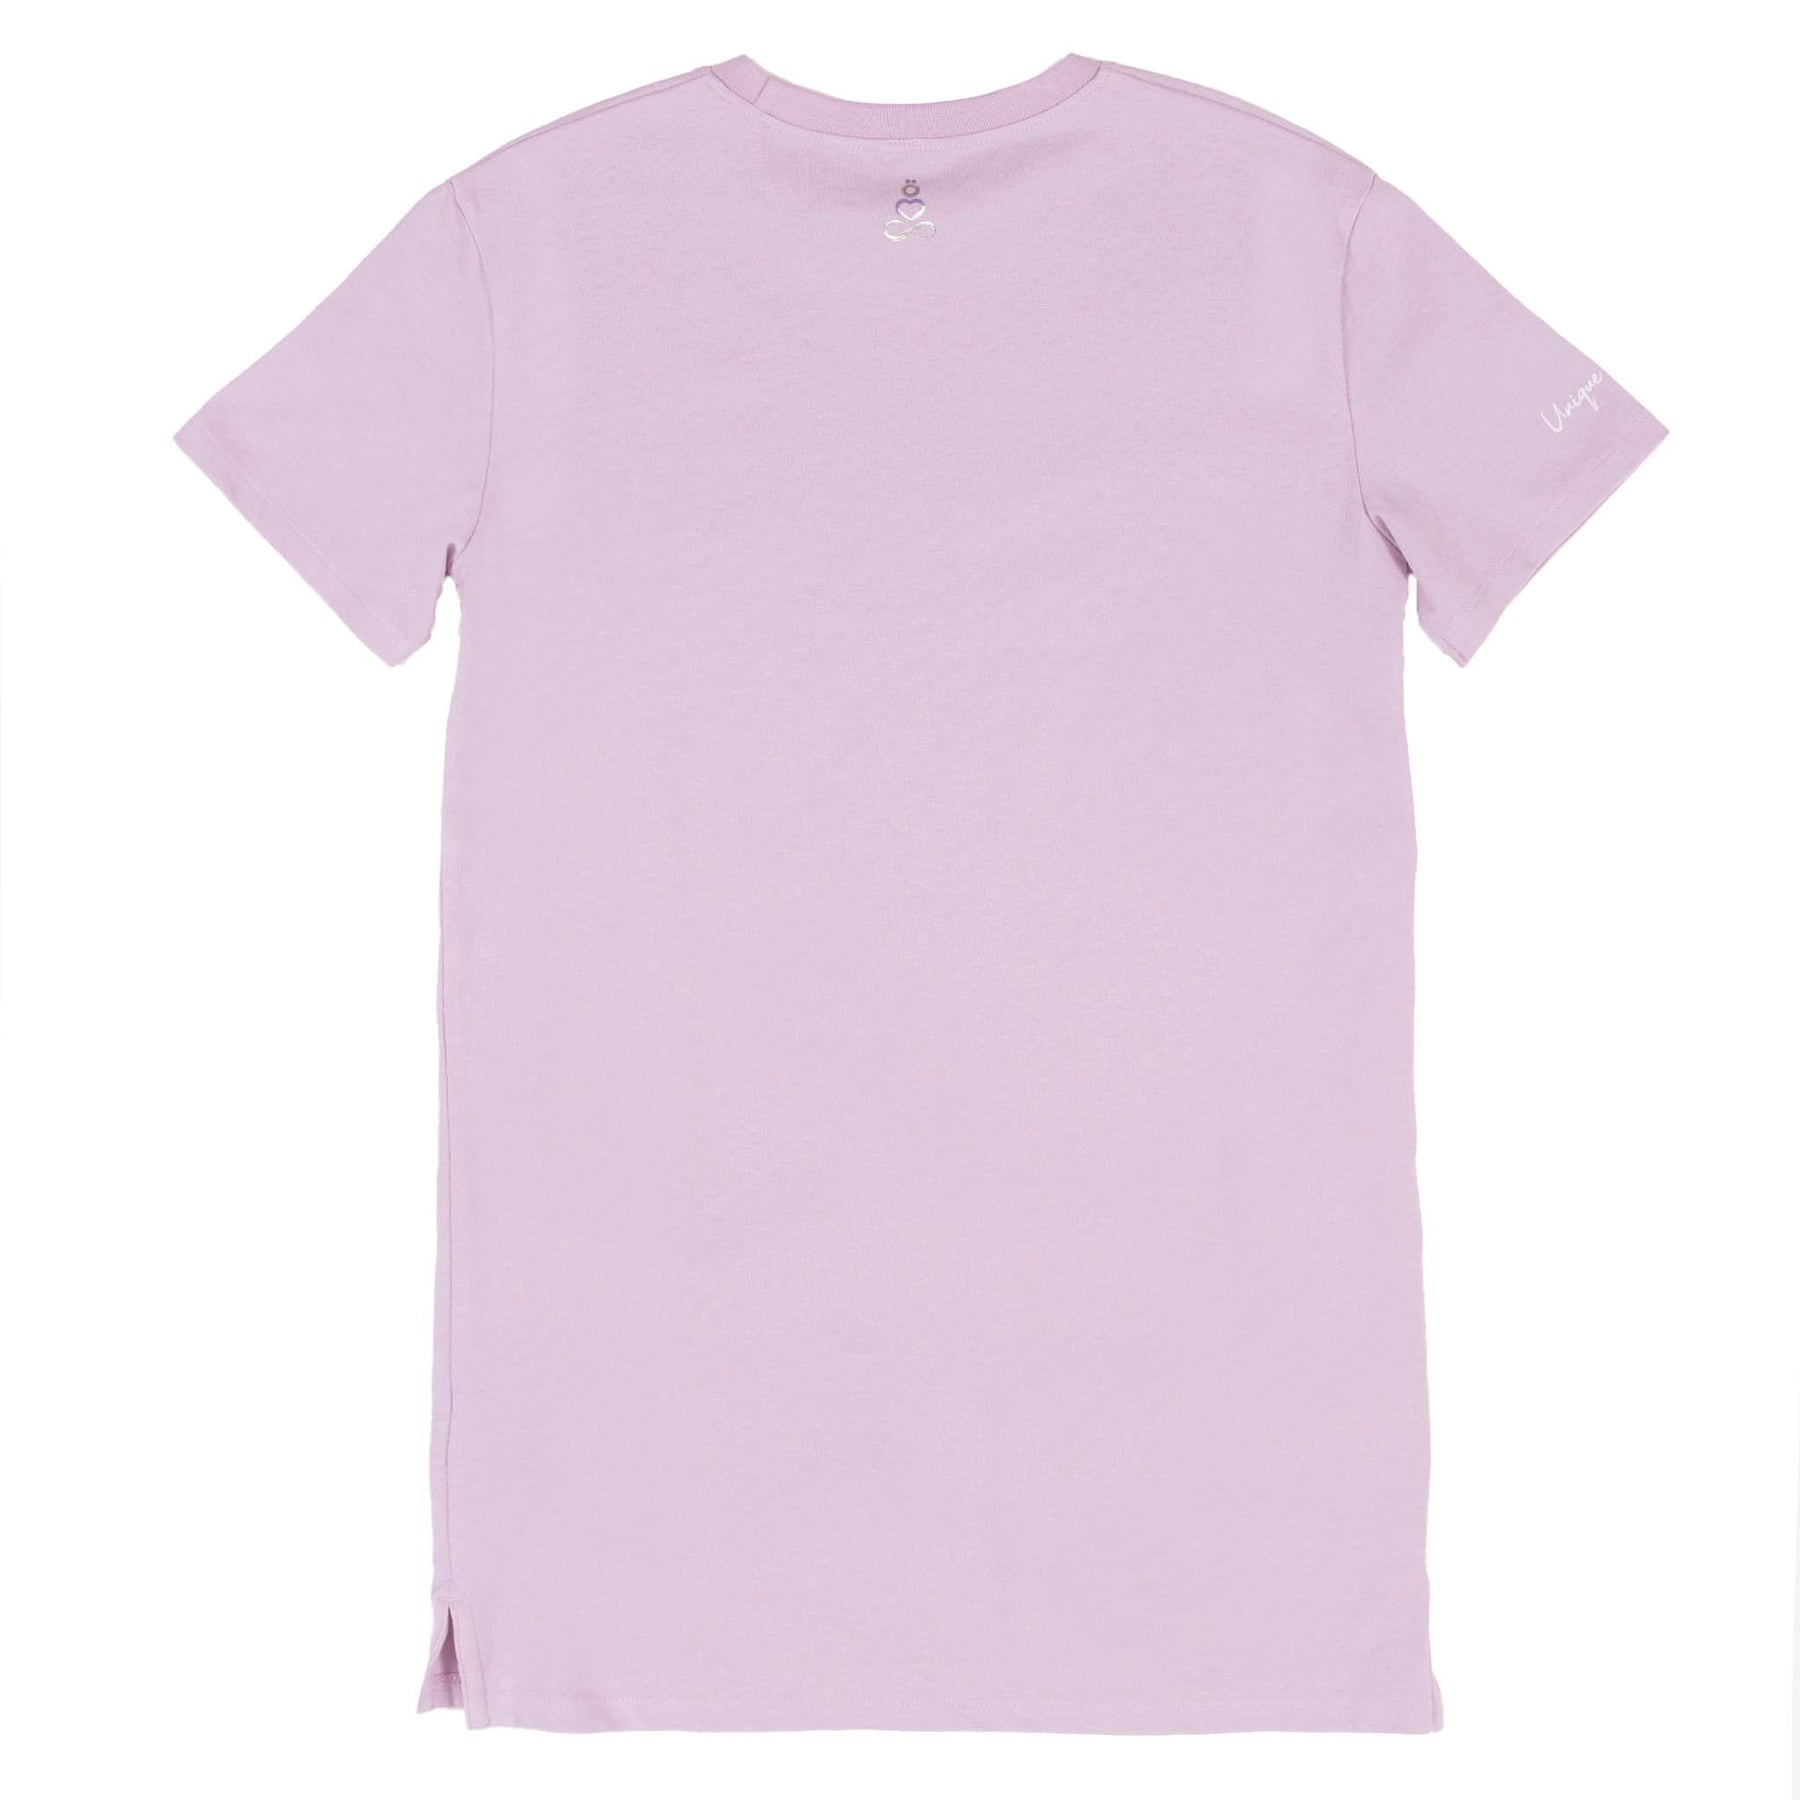 Robe T-shirt pour enfant fille par Nanö | S22L50-10 Rose Pâle | Boutique Flos, vêtements pour bébés et enfants